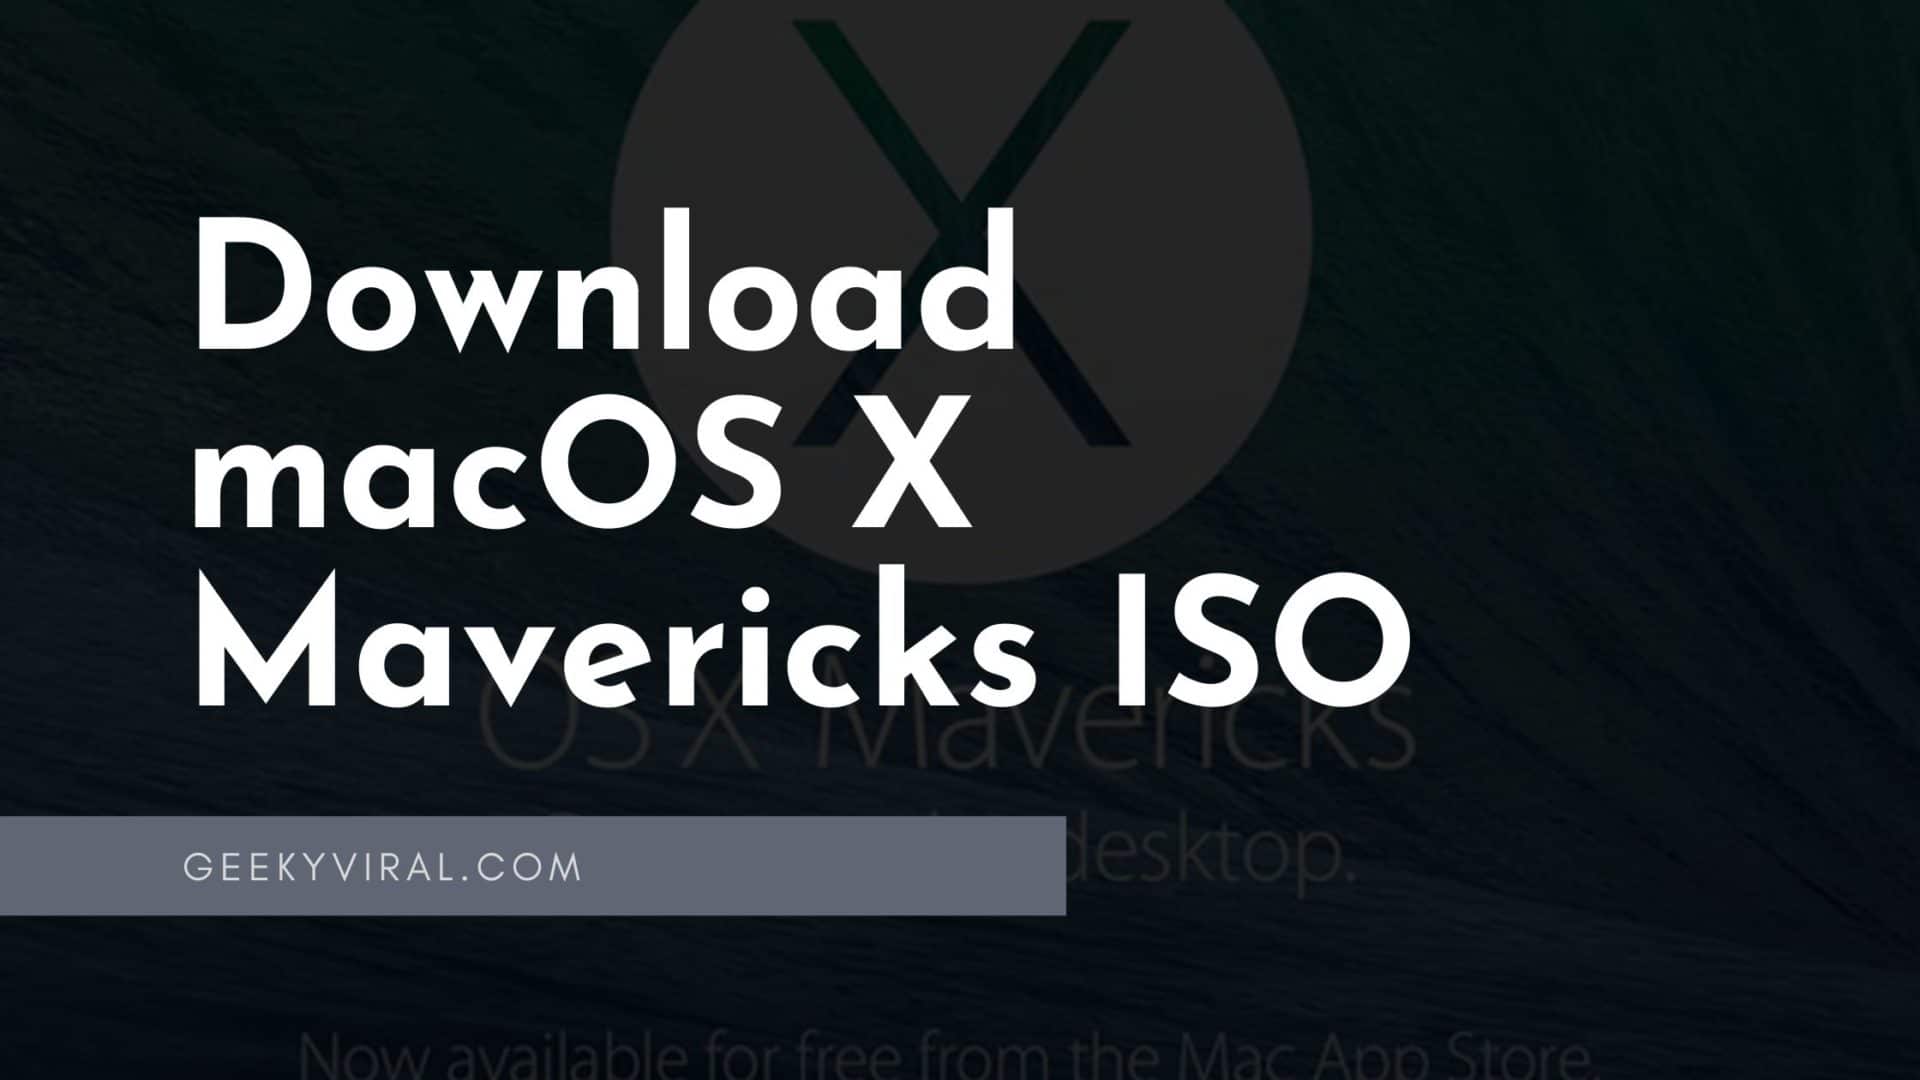 mac os x mavericks 10.9 iso and dmg image download